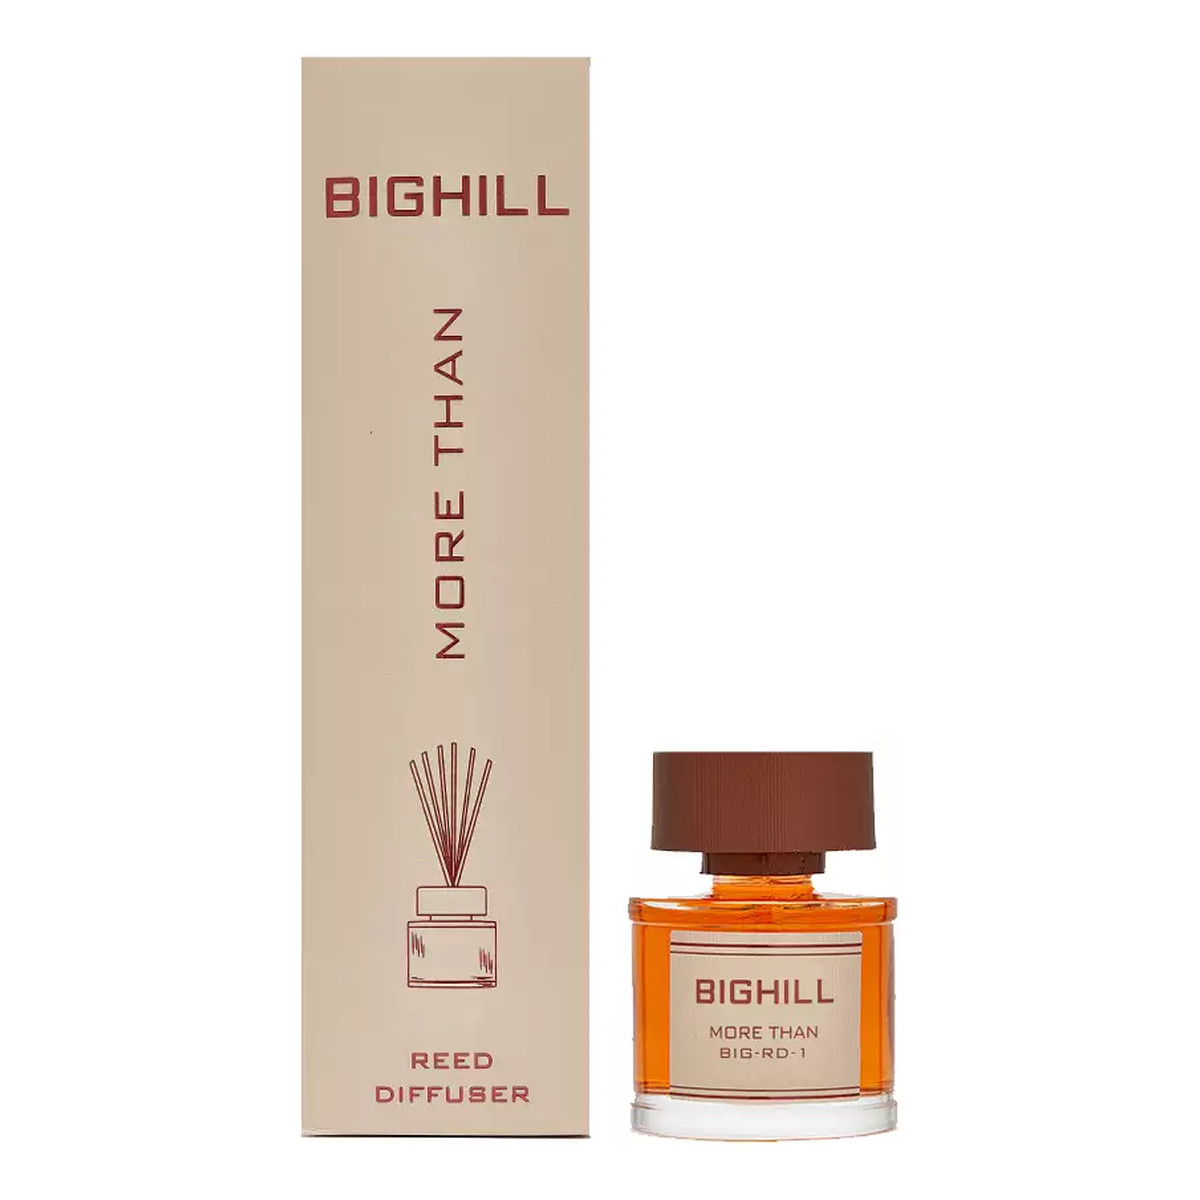 Bighill Ekskluzywny dyfuzor zapachowy z patyczkami Kirke + More Than 2x120ml